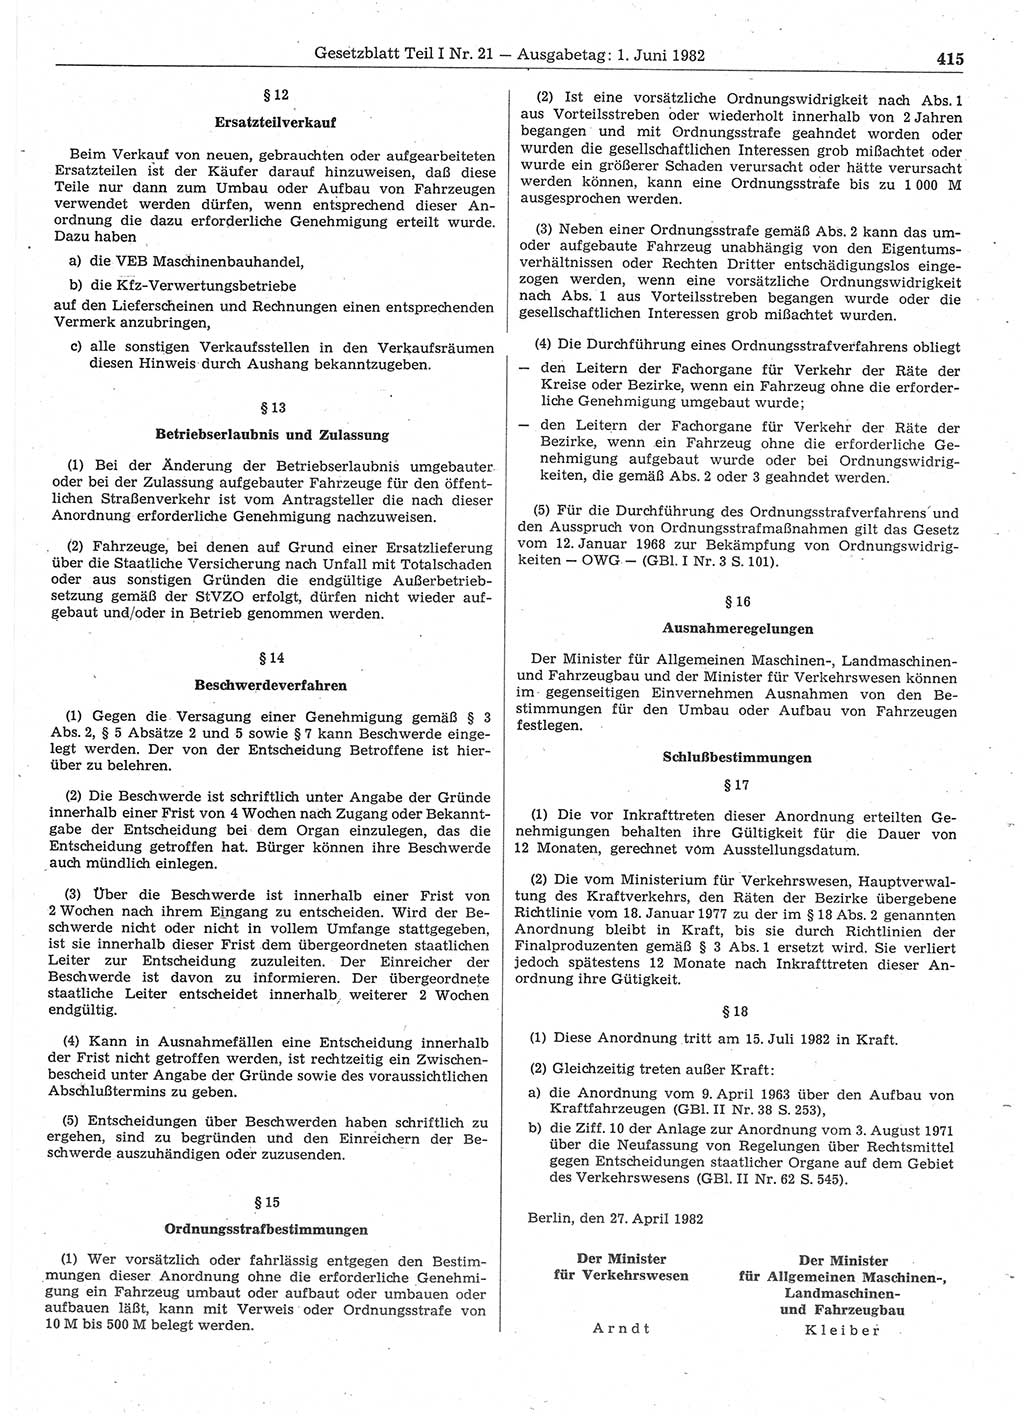 Gesetzblatt (GBl.) der Deutschen Demokratischen Republik (DDR) Teil Ⅰ 1982, Seite 415 (GBl. DDR Ⅰ 1982, S. 415)